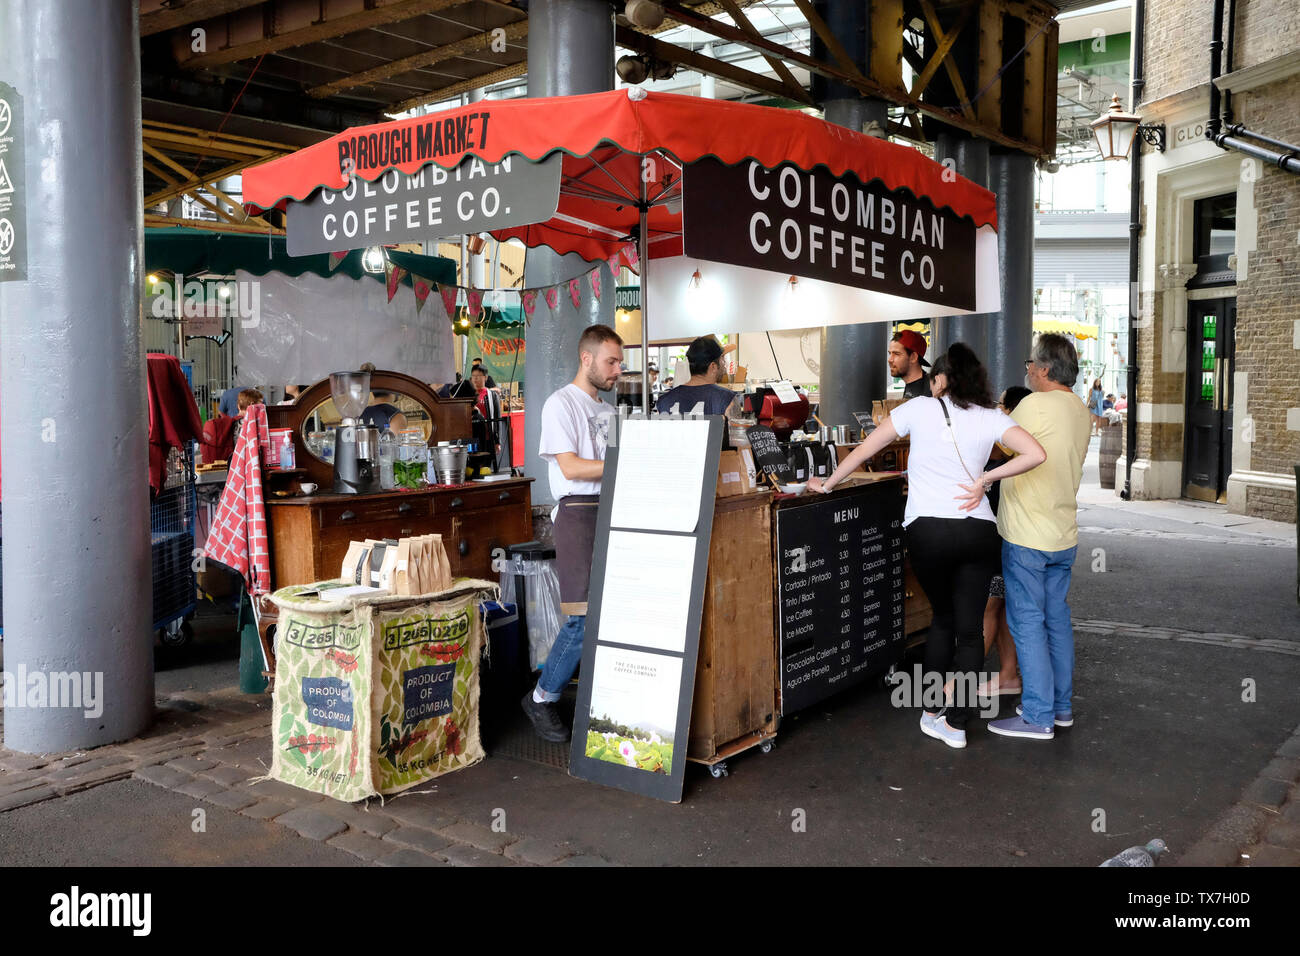 Kolumbianischen Kaffee Co, Borough Market, London Stockfoto